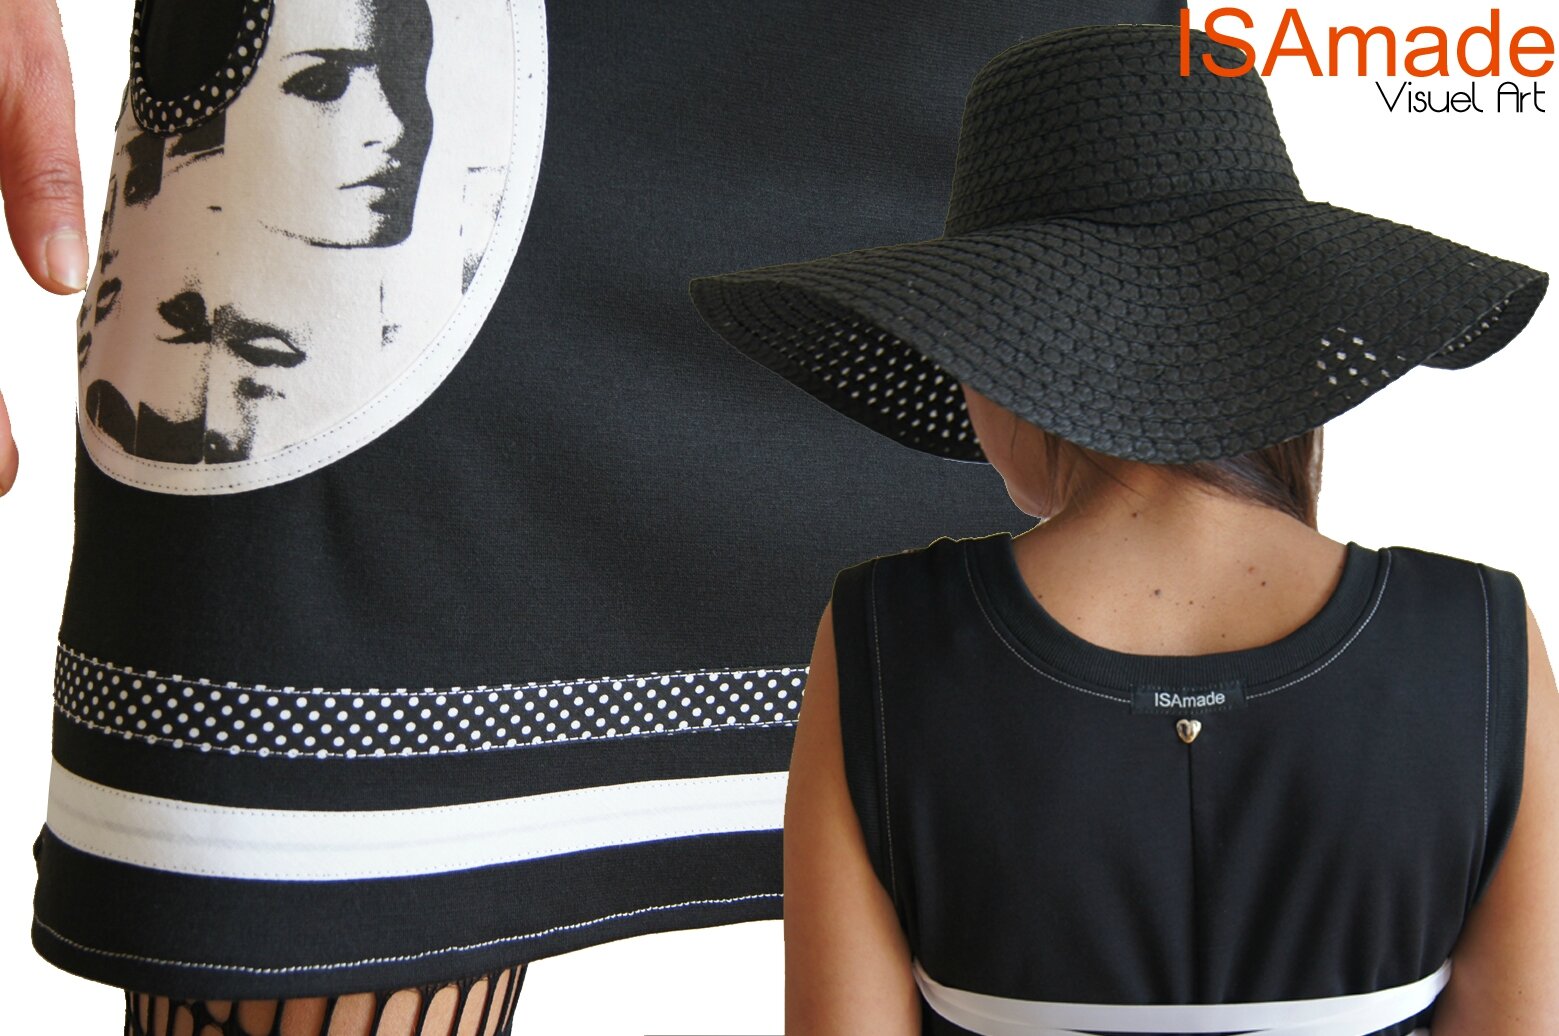 Robe Noire et blanc en maille imprimé stylisé Pop Art Coupure de magazines et Pois